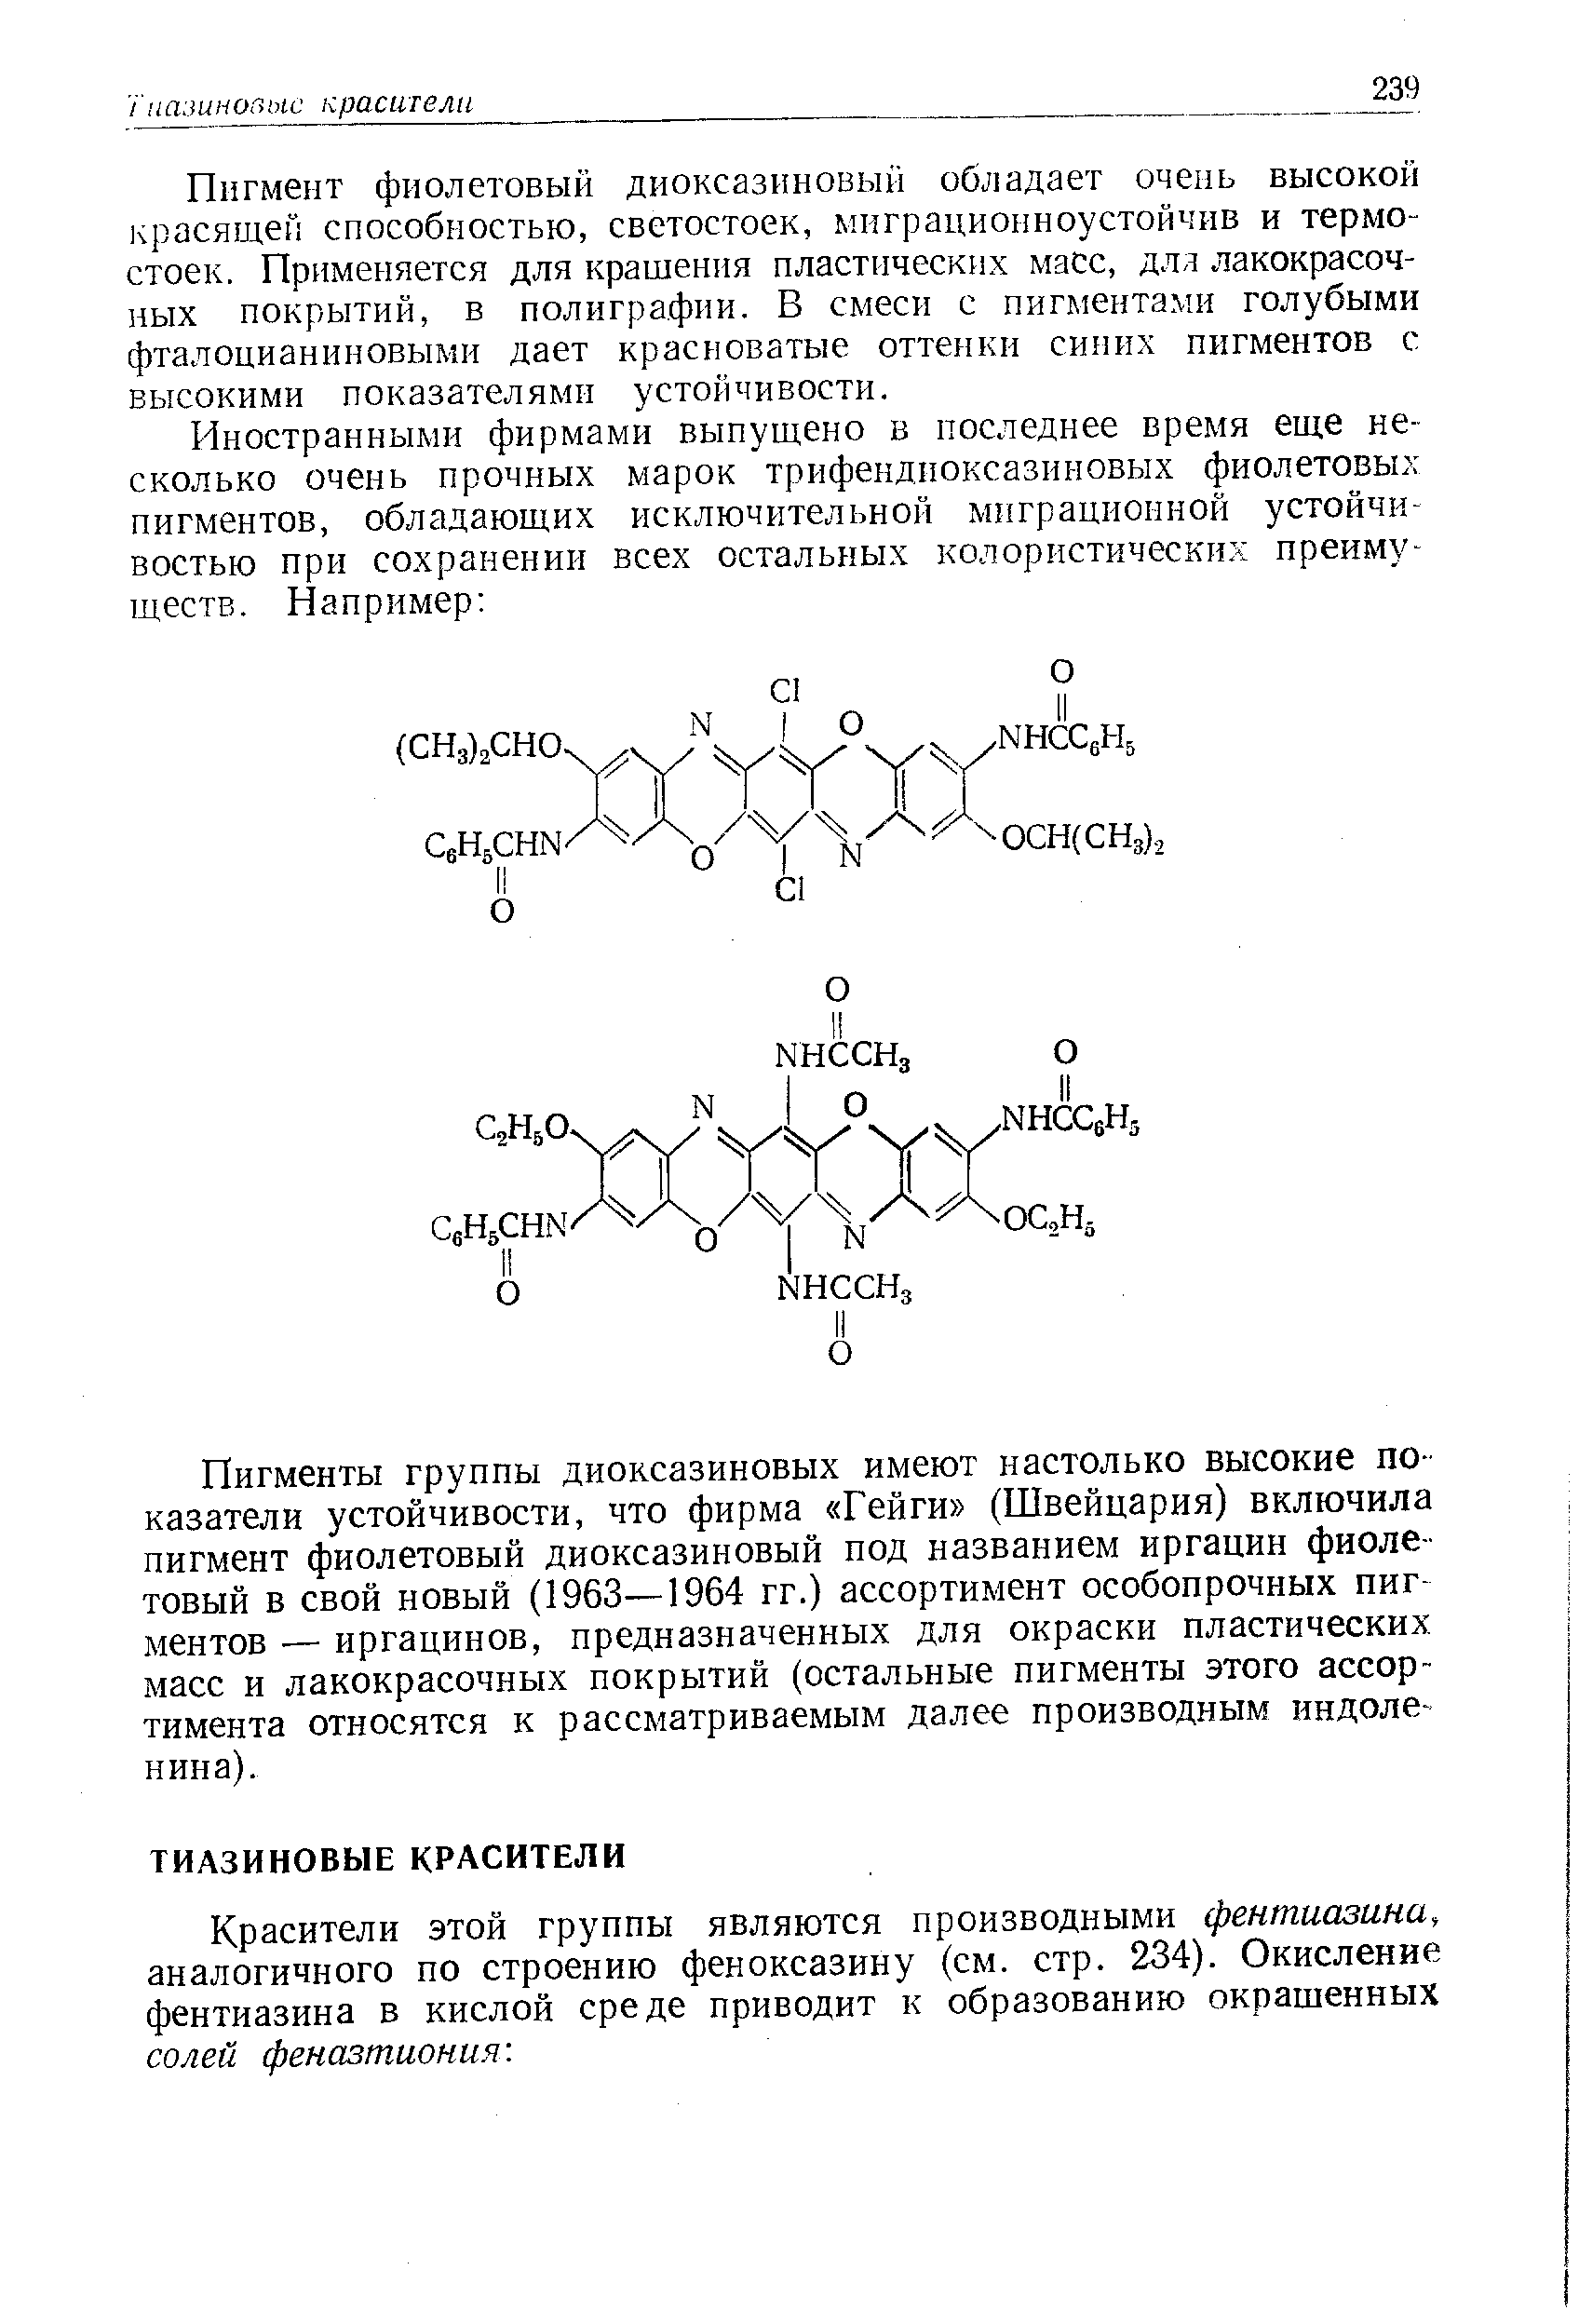 Красители этой группы являются производными фентиазина, аналогичного по строению феноксазину (см. стр. 234). Окисление фентиазина в кислой среде приводит к образованию окрашенных солей феназтиония. 